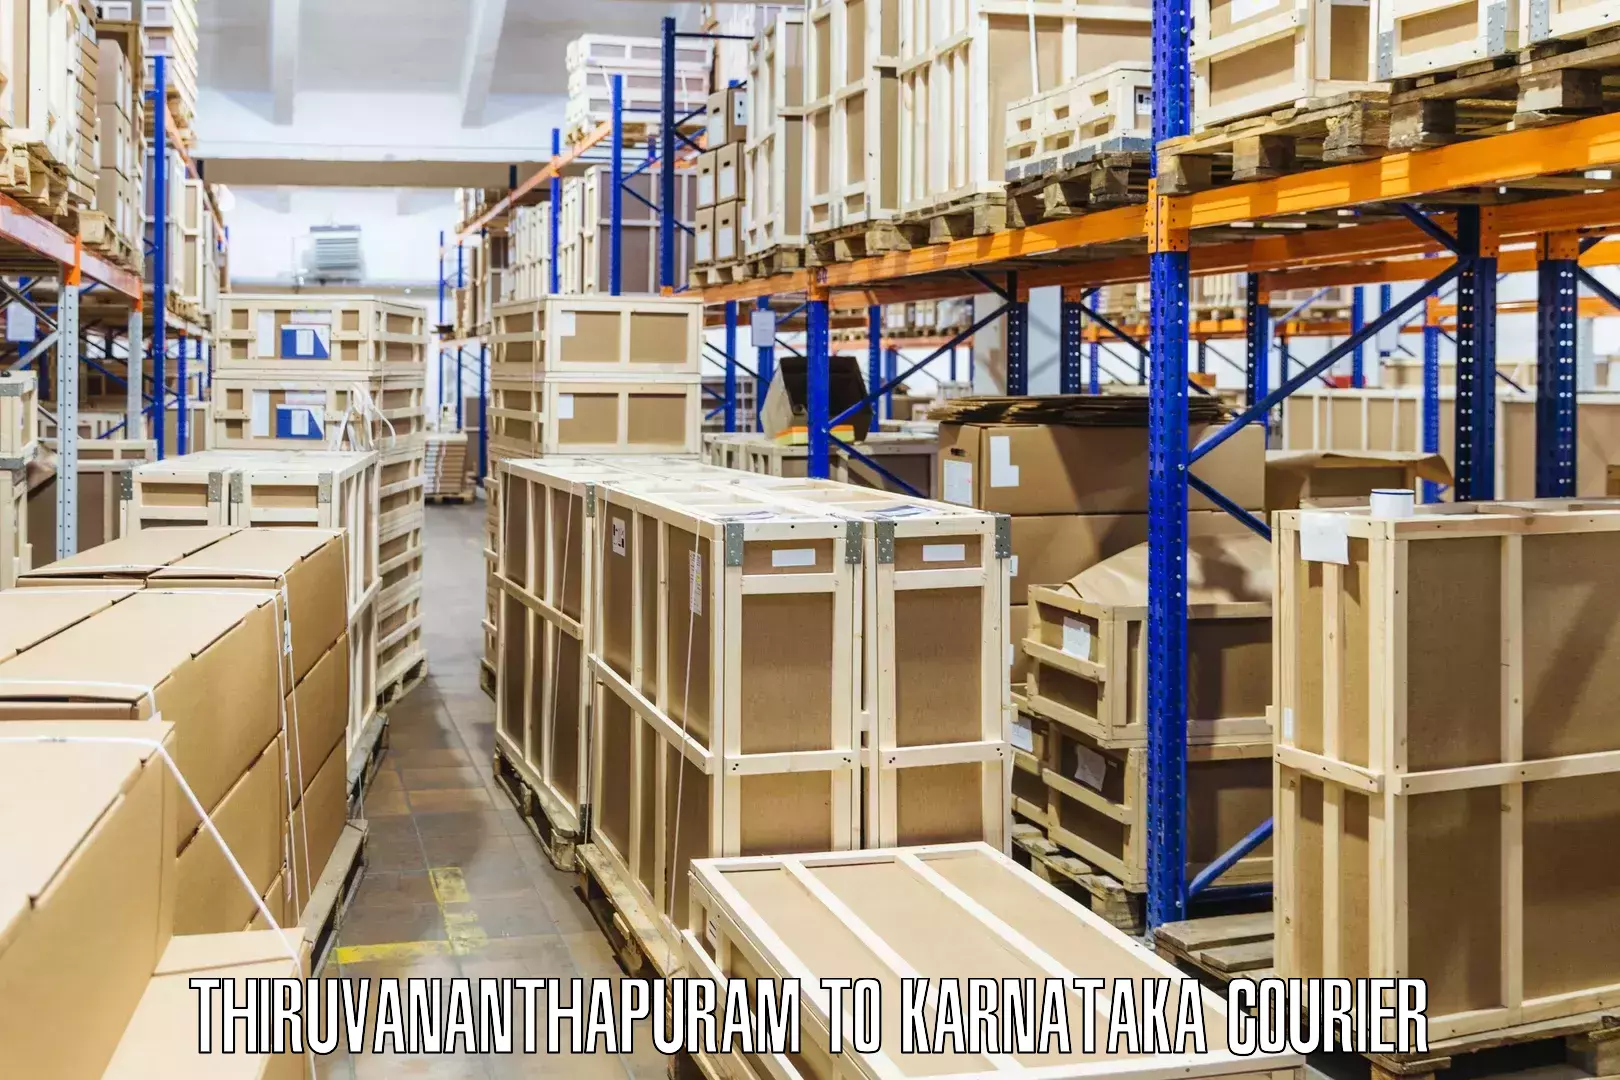 Specialized shipment handling Thiruvananthapuram to Krishnarajanagara